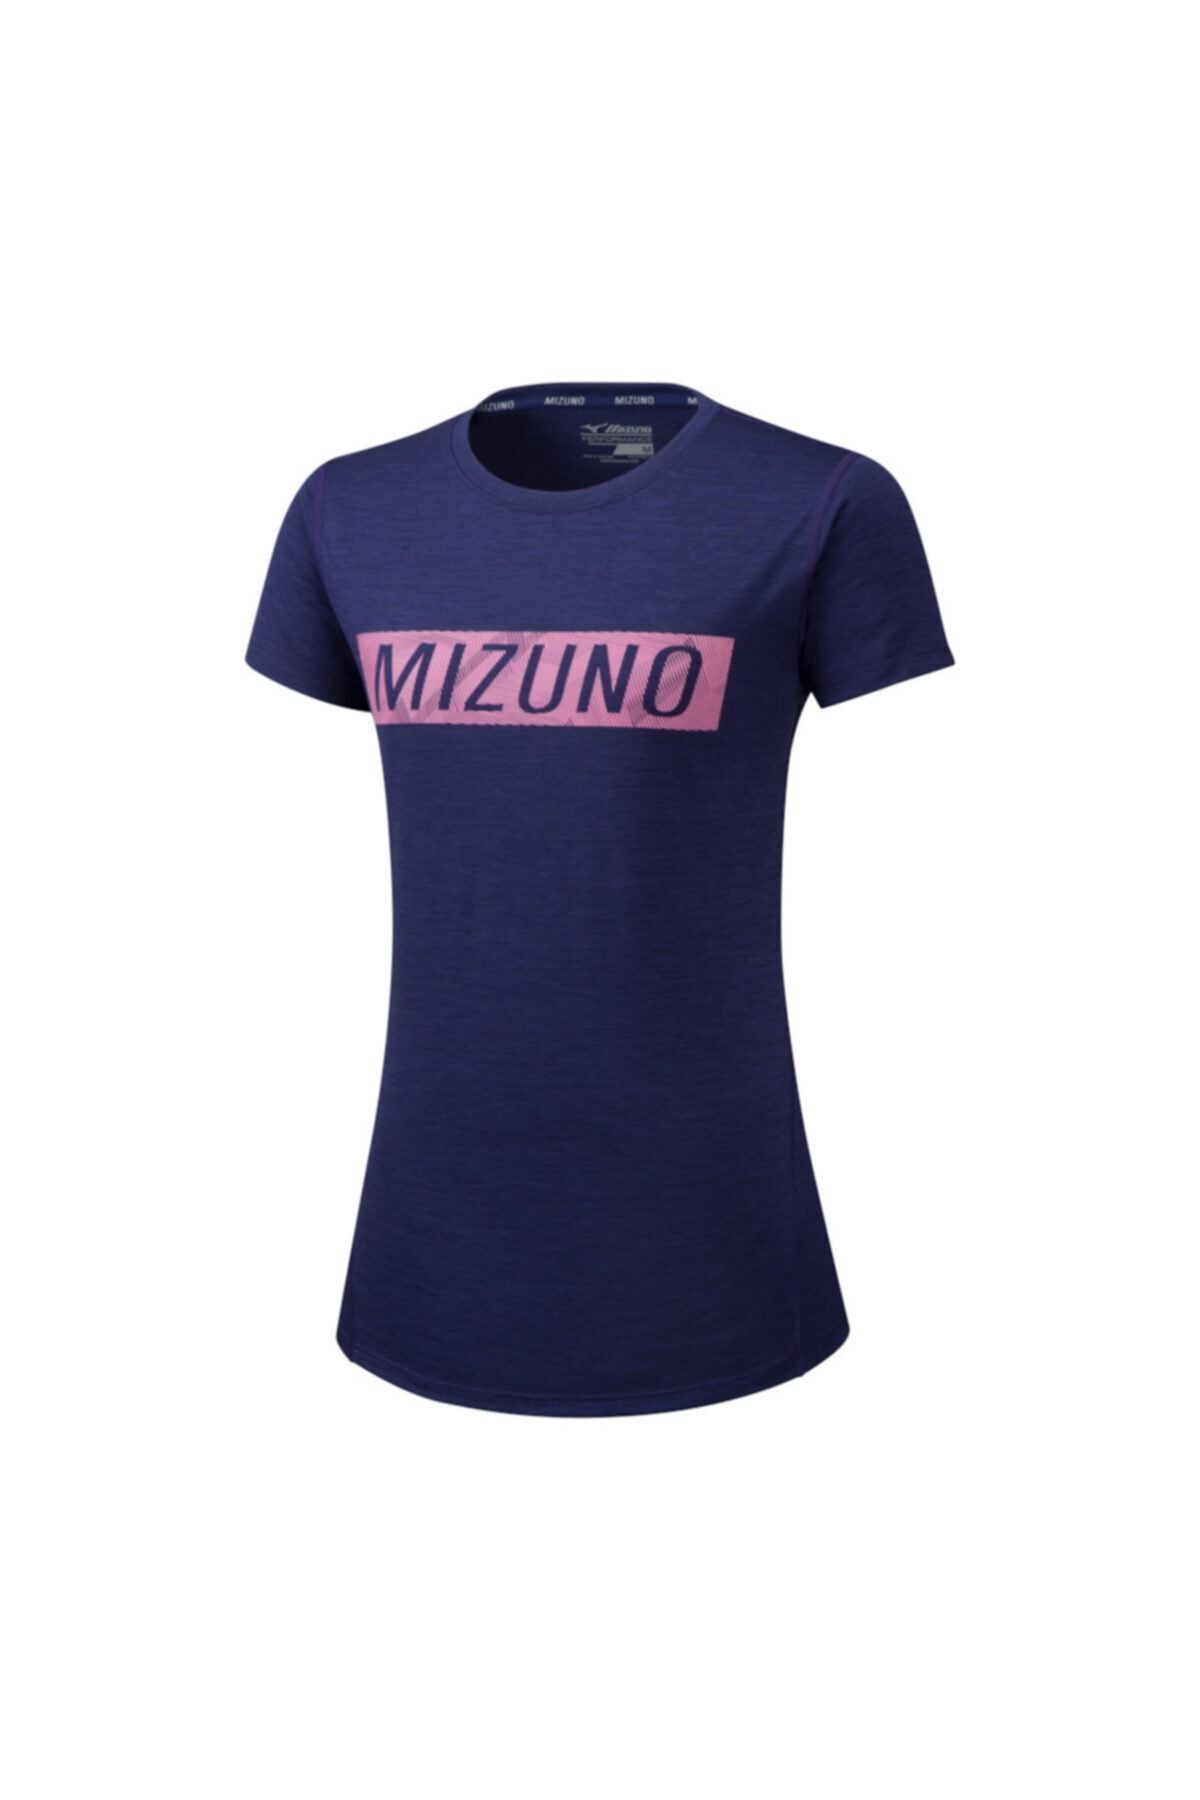 Mizuno Impulse Core Kadın Tişört Lacivert